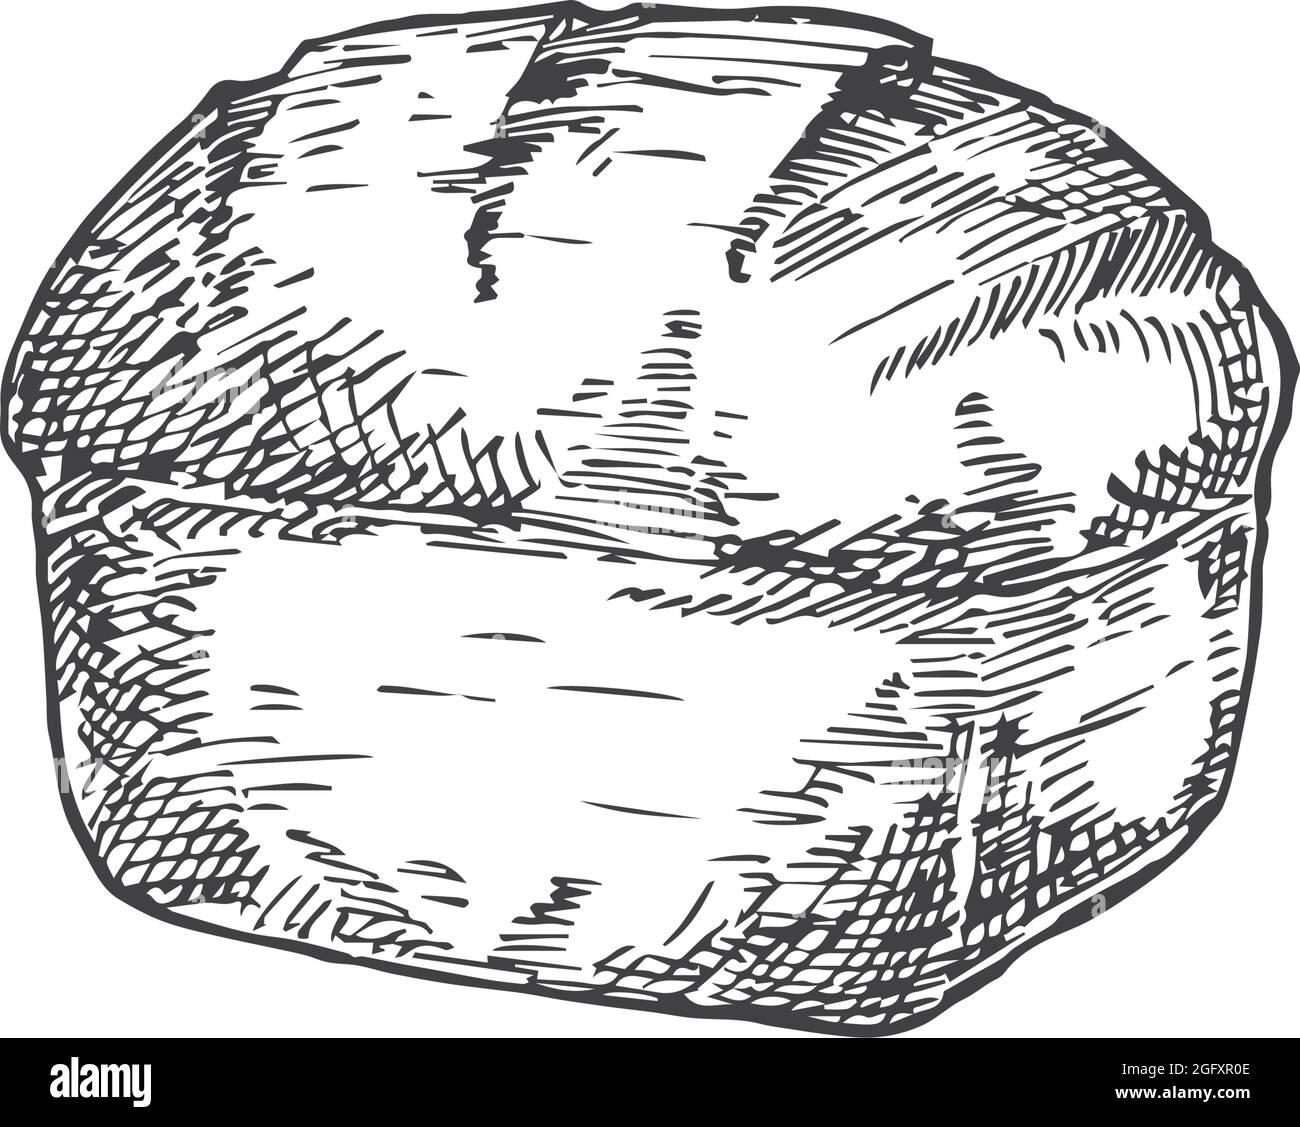 Esquisse Vector Bakery. Illustration dessinée à la main d'un brique de pain. Isolé Illustration de Vecteur